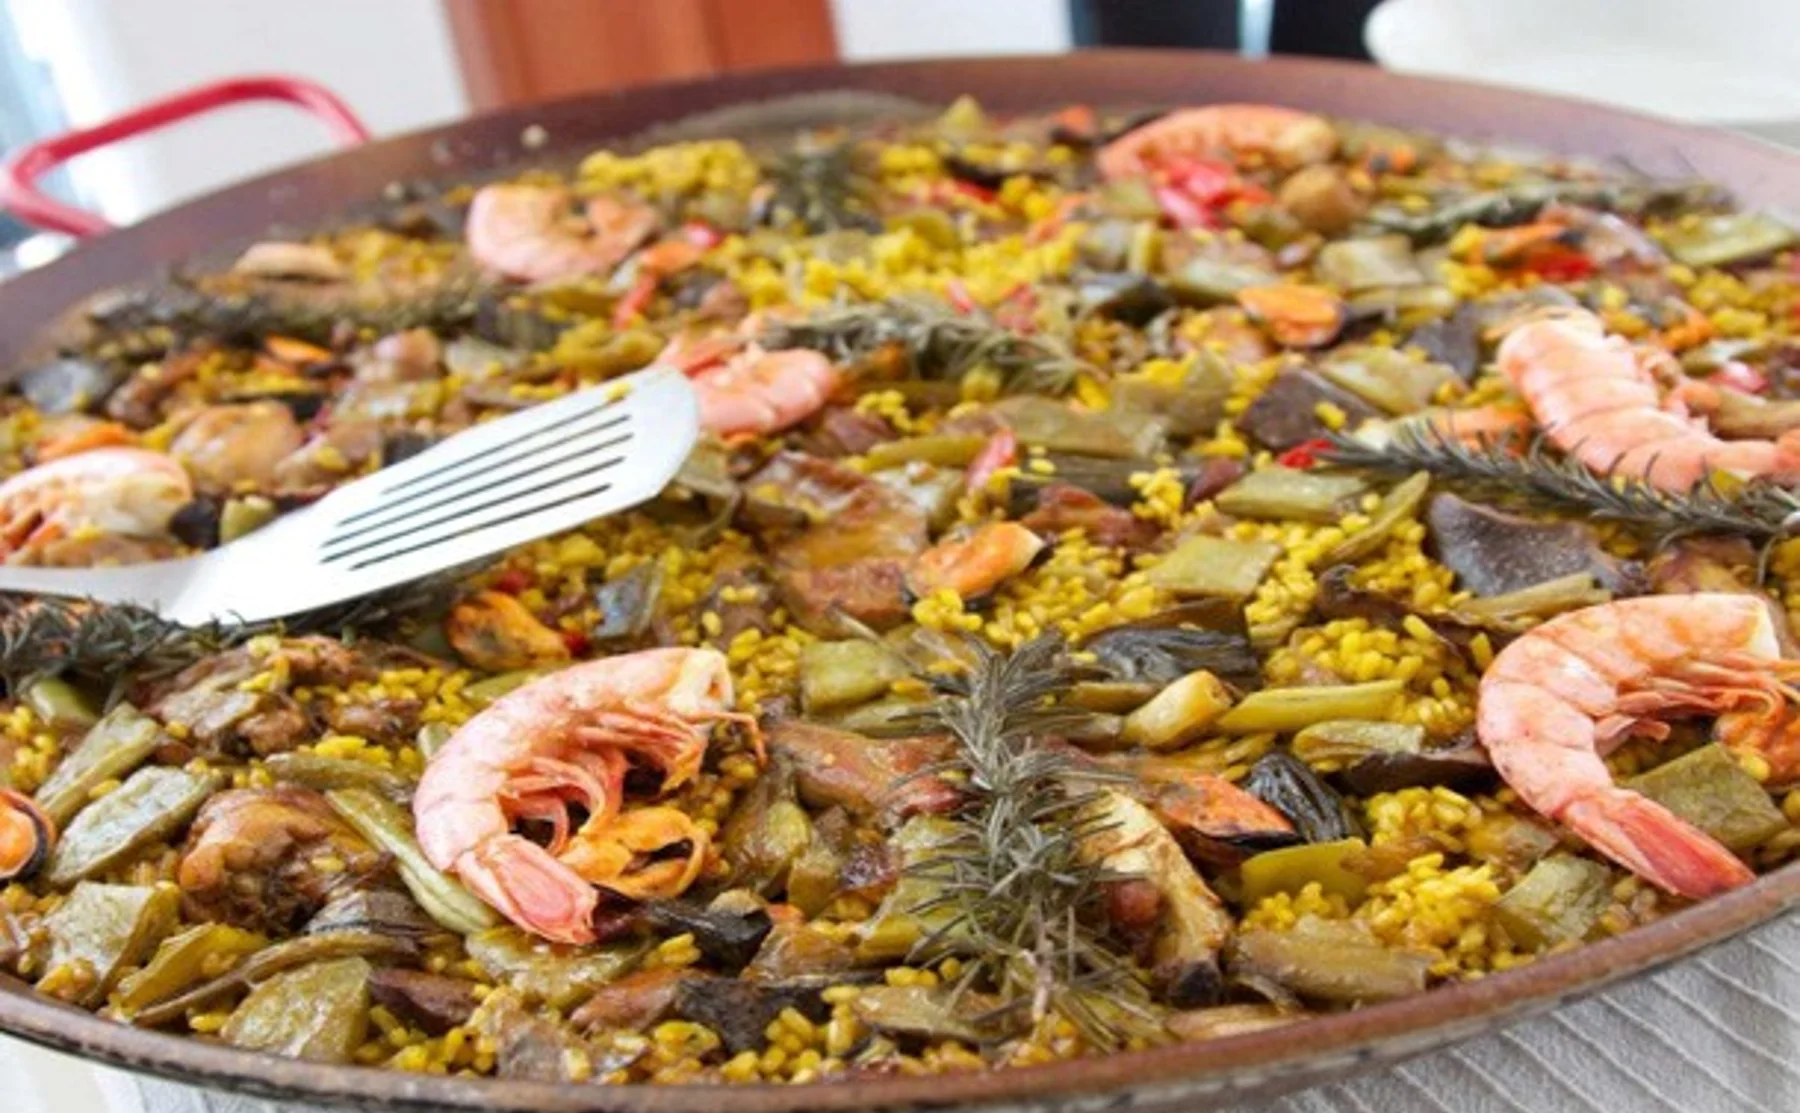 Spanish specialties: Tapas & Paella dinner - 391643